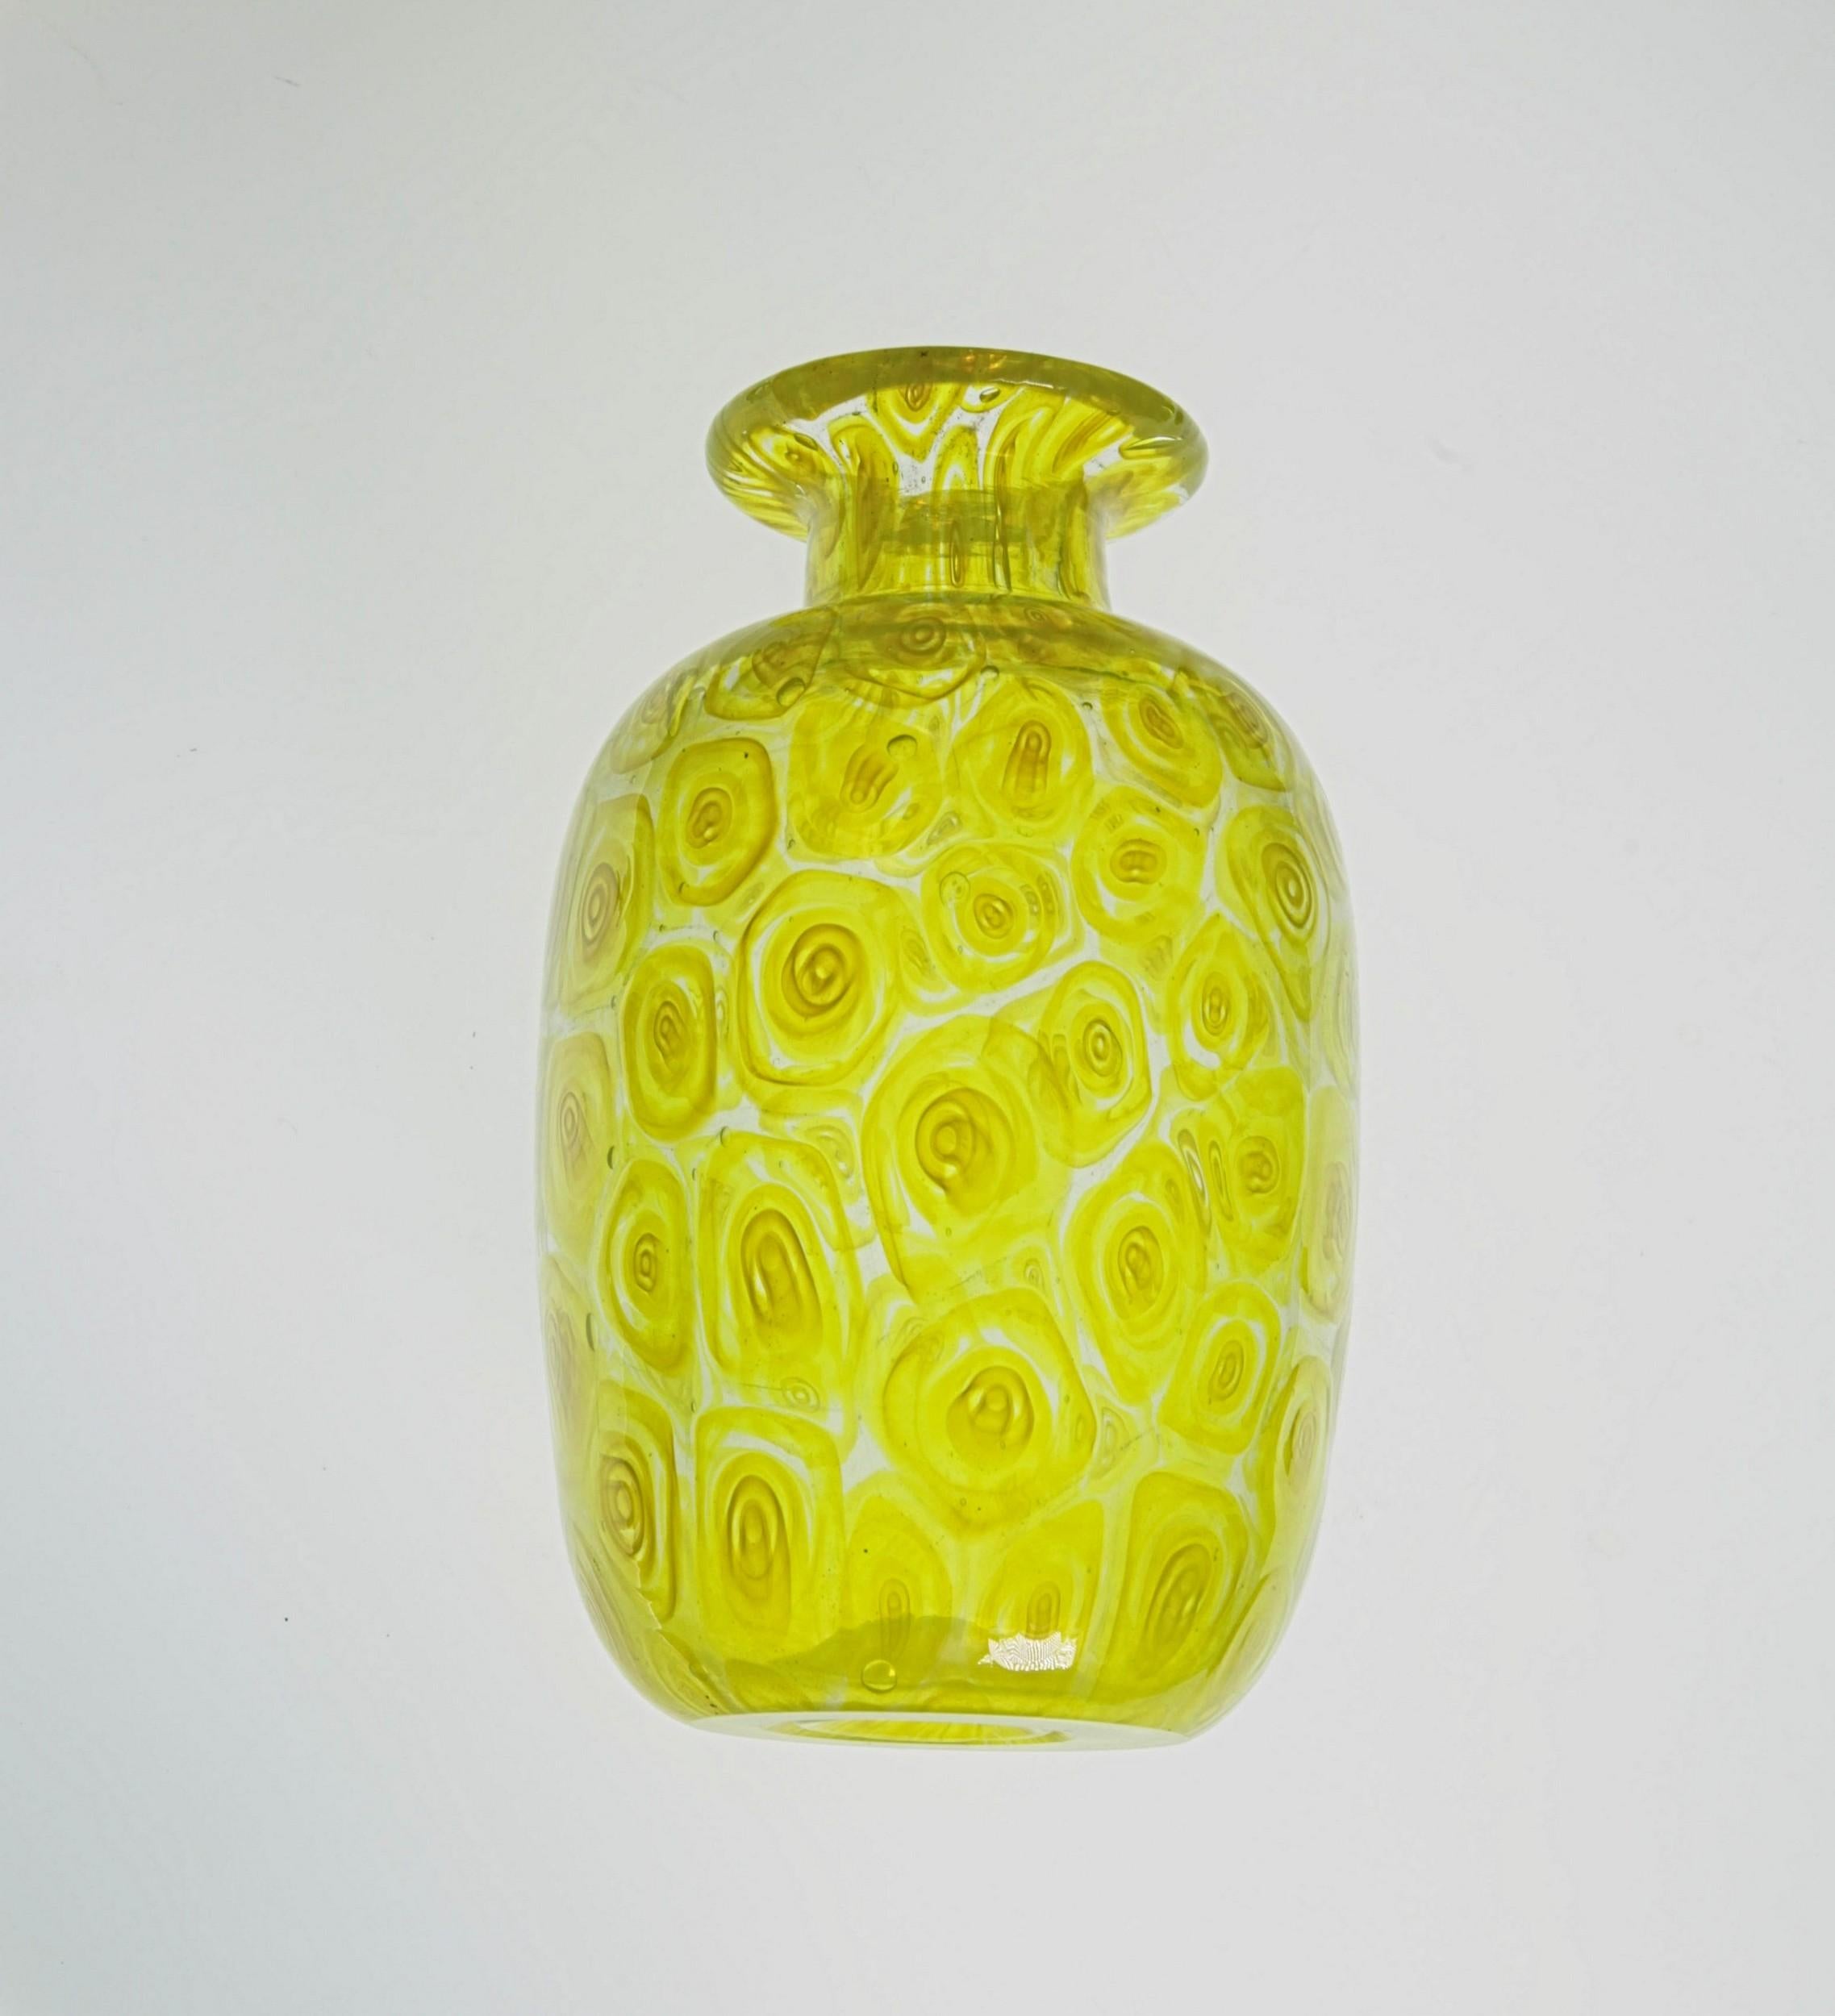 Glass Cenedese Unique Uranium Yellow Murrina Vase, 1960s or Sooner